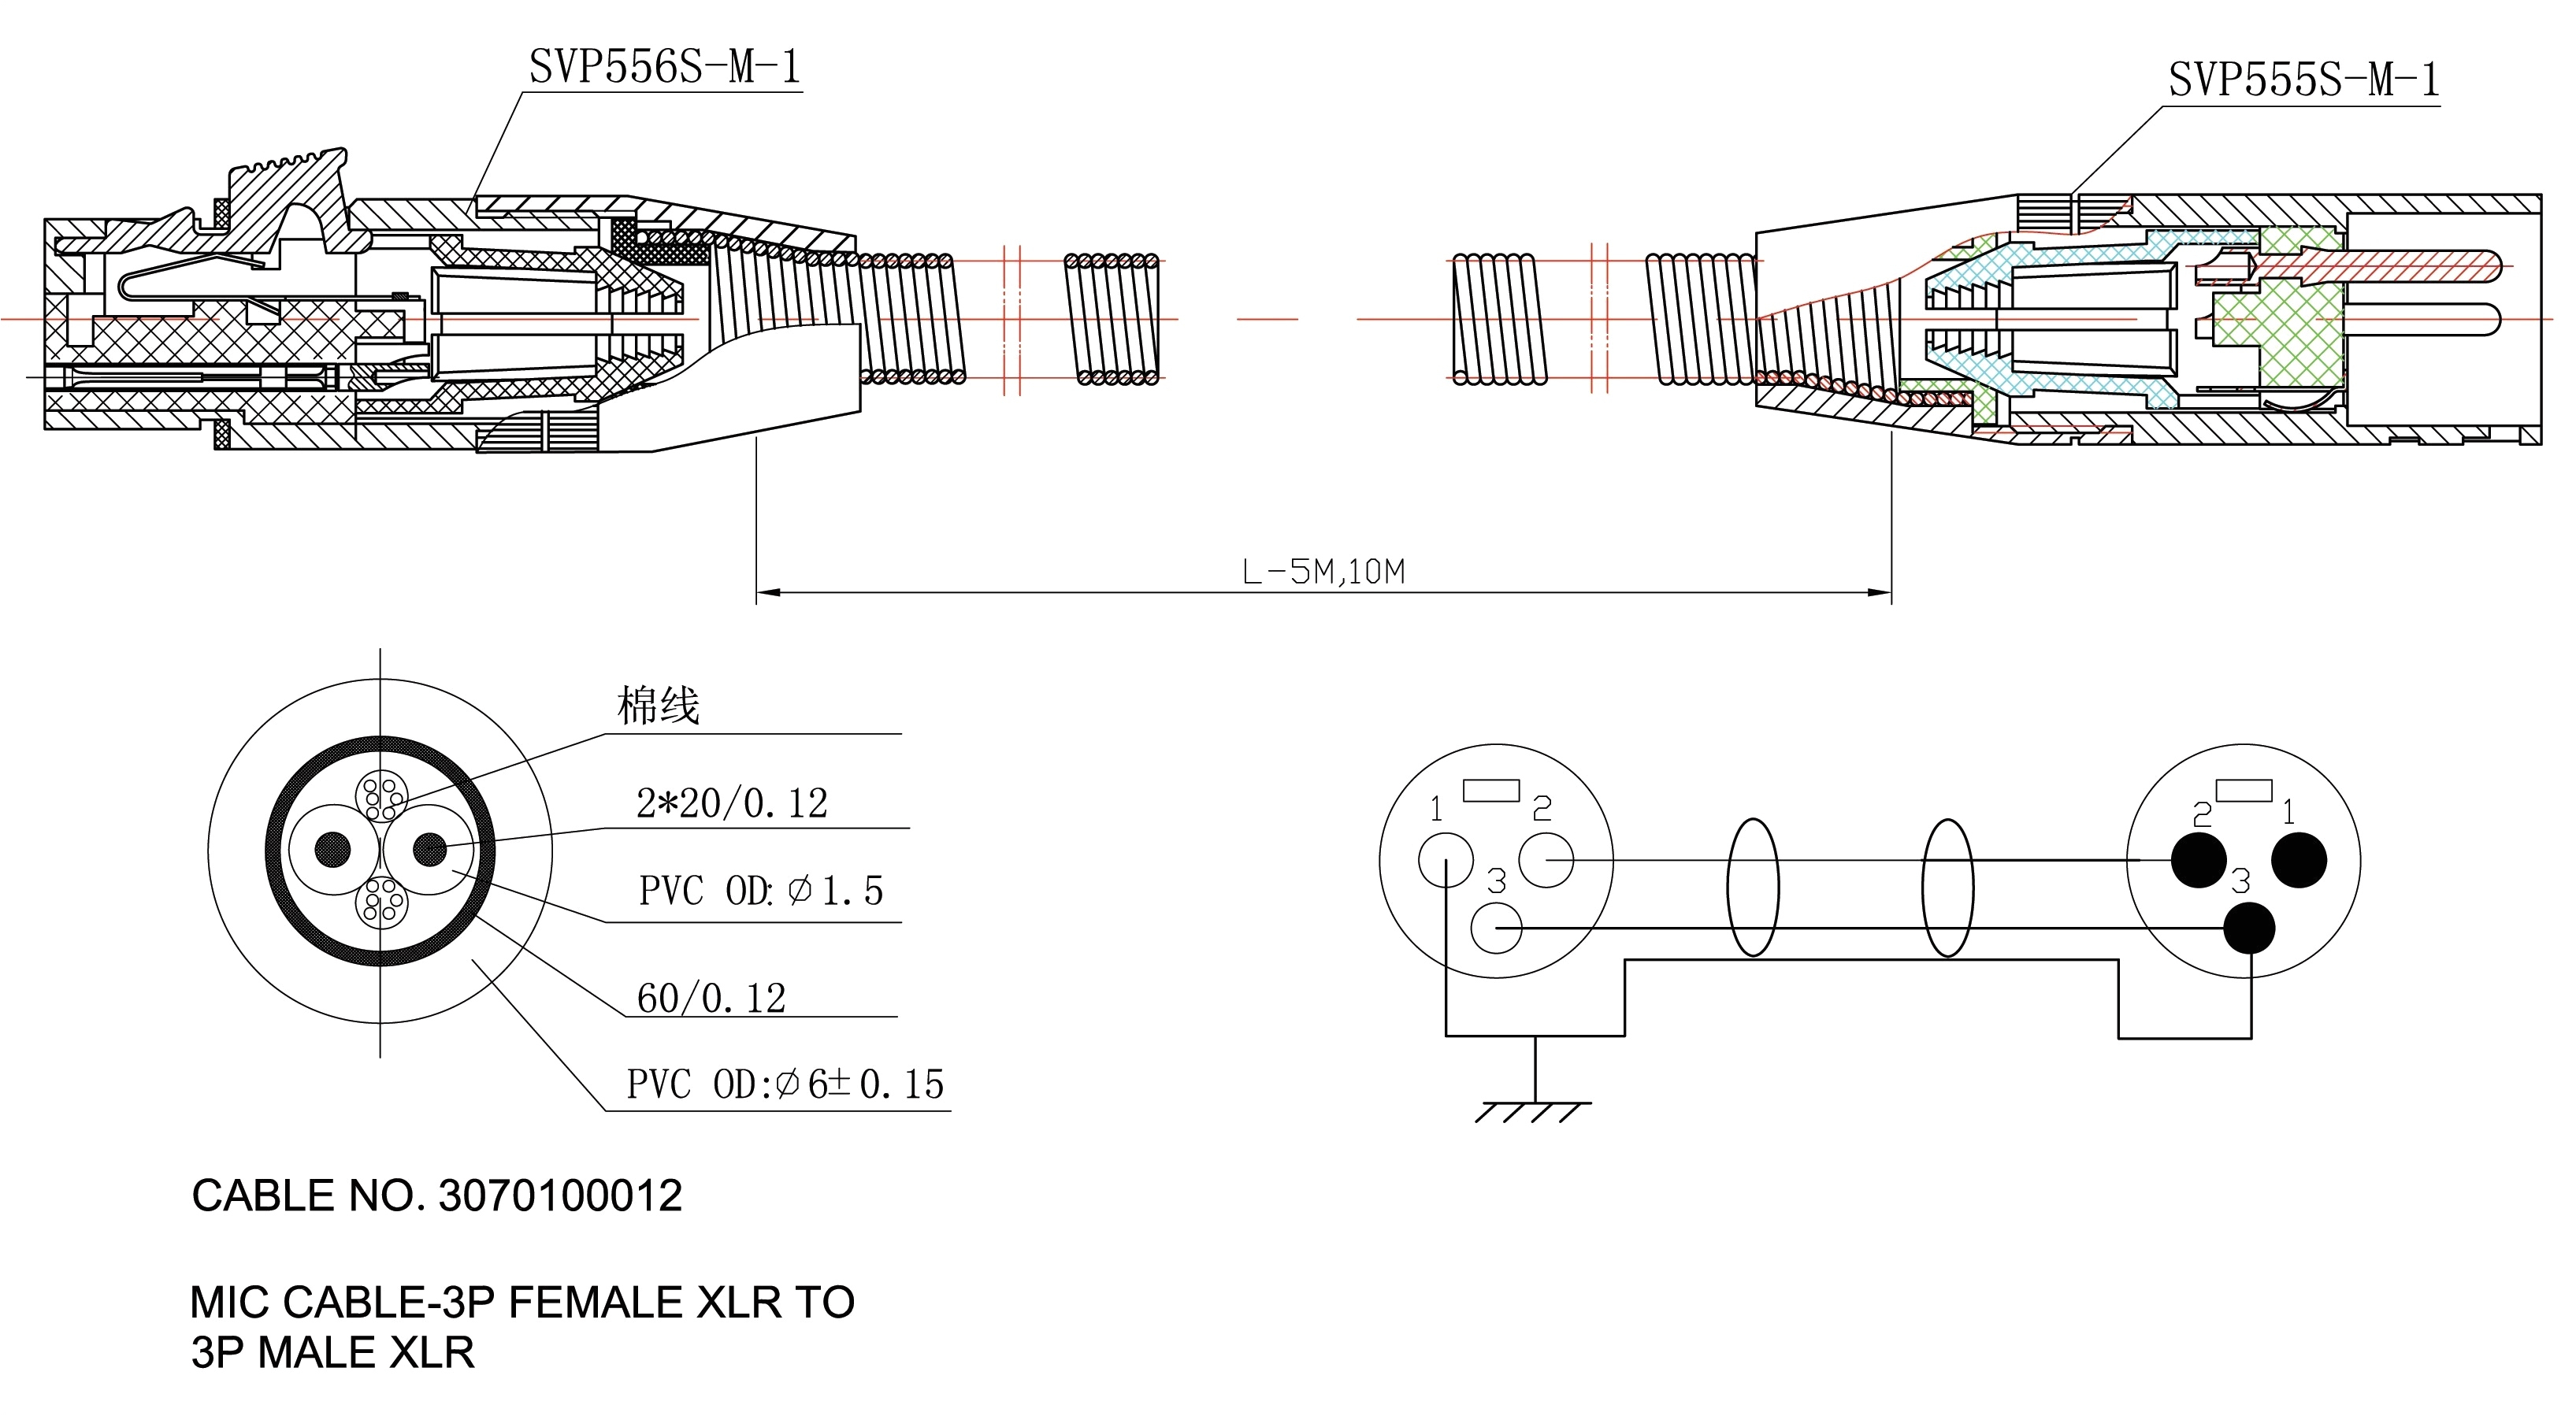 ford starter solenoid wiring diagram best of ford solenoid wiring diagram elegant wiring diagram for alternator